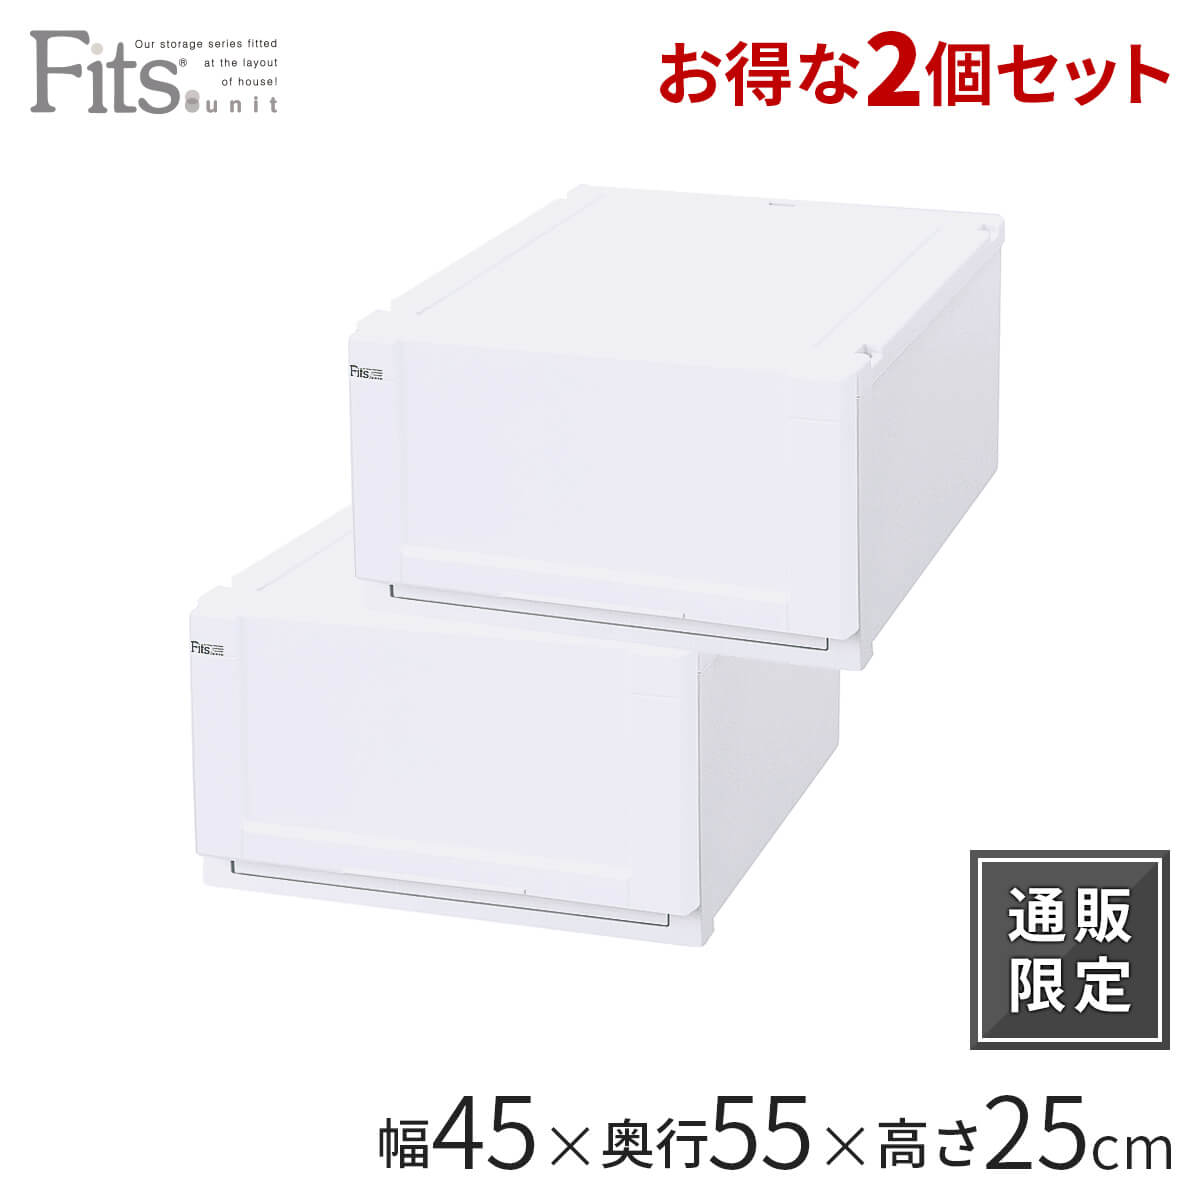 7480円 日本メーカー新品 収納ケース Fits フィッツ フィッツユニット ケース 4525 引き出し プラスチック 4個セット フィッツケース 収納 収納ボックス